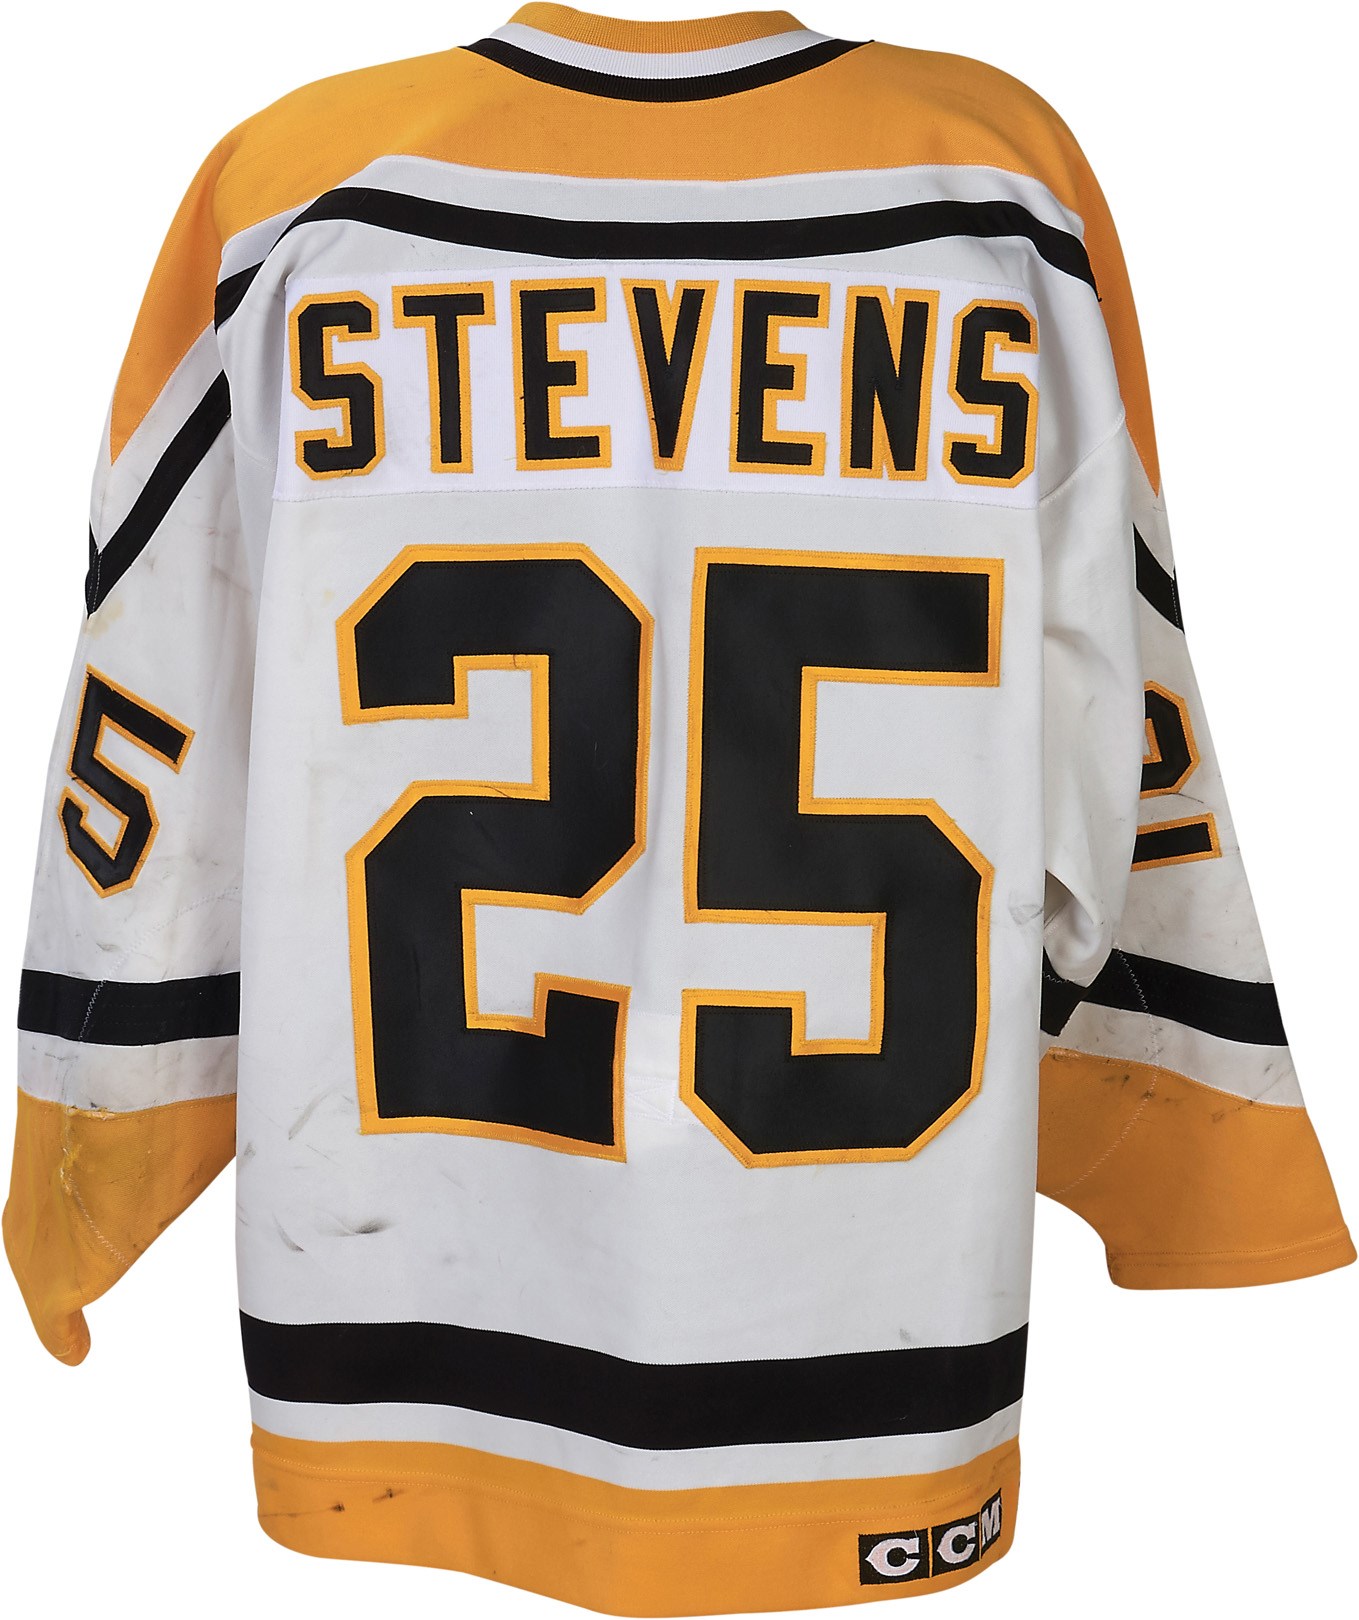 - 1993-94 Kevin Stevens Pittaburgh Penguins Game Worn Jersey